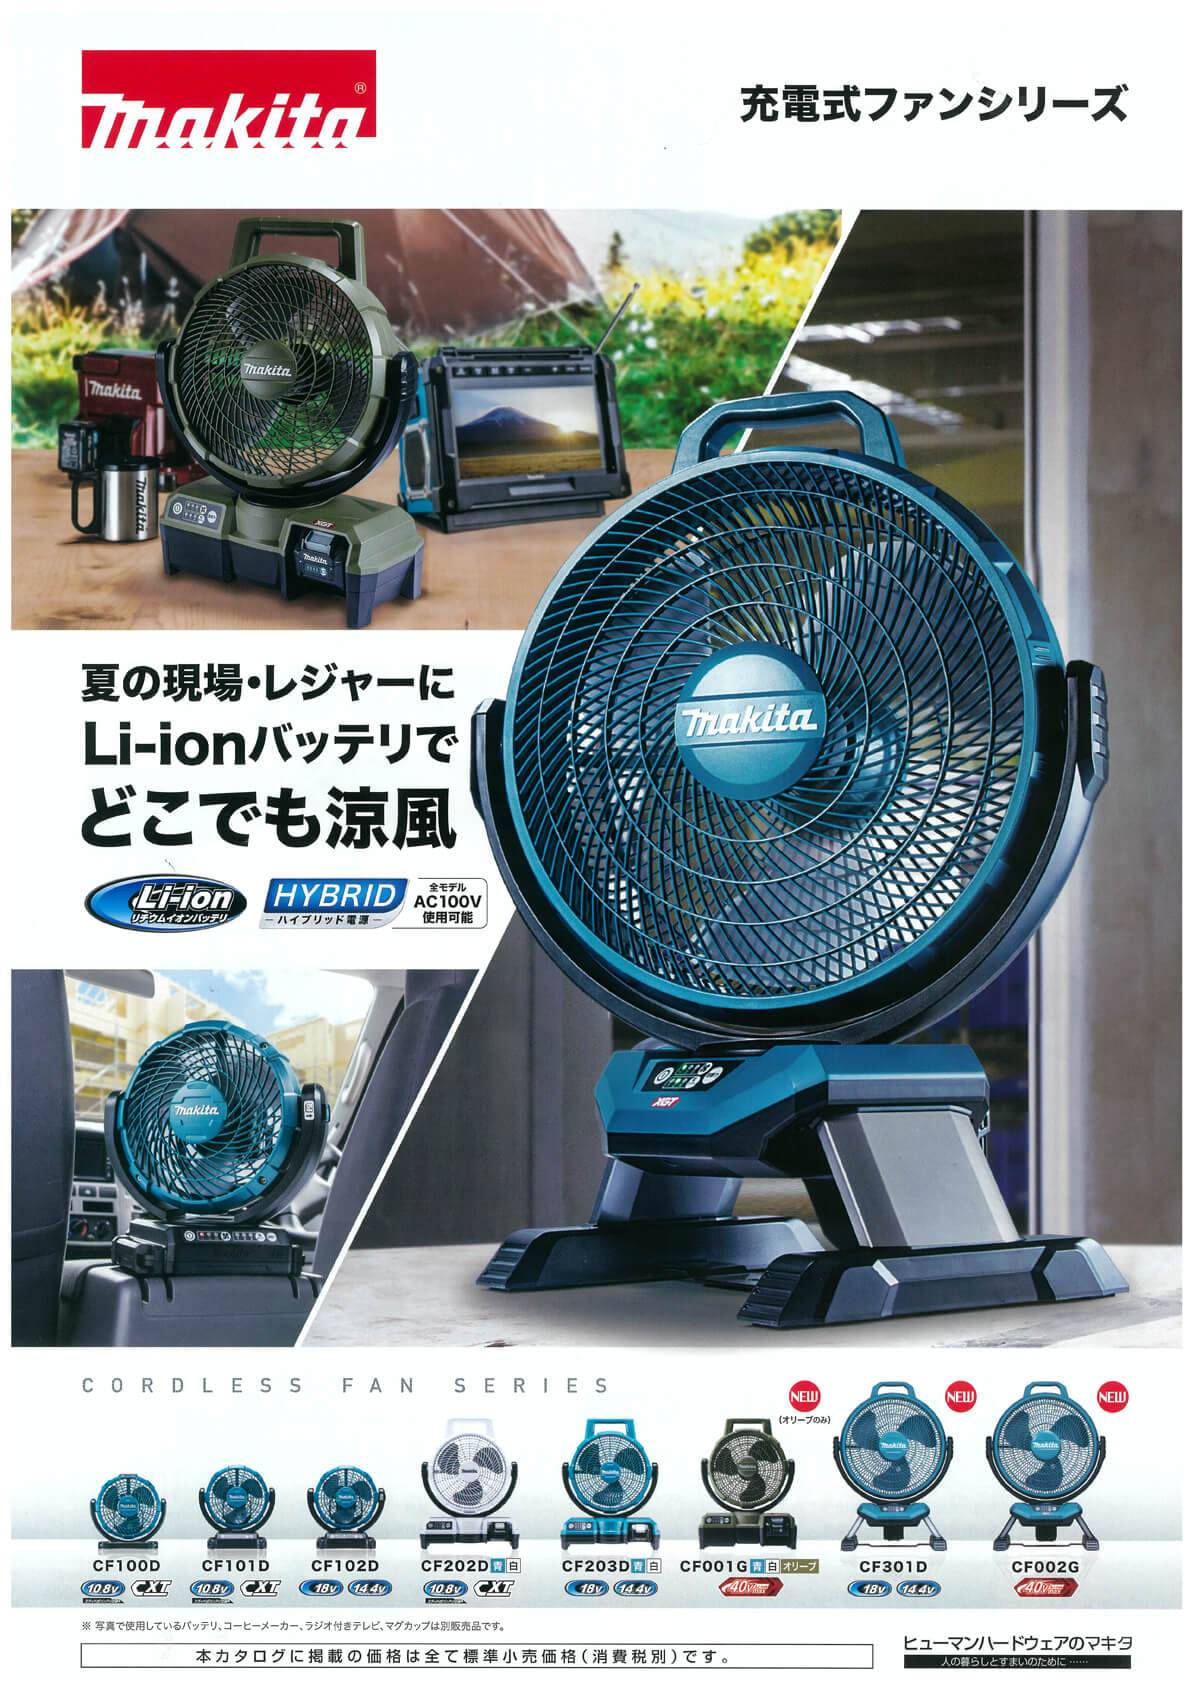 マキタ CF001GZO 40Vmax充電式ファン(オリーブ) ウエダ金物【公式サイト】